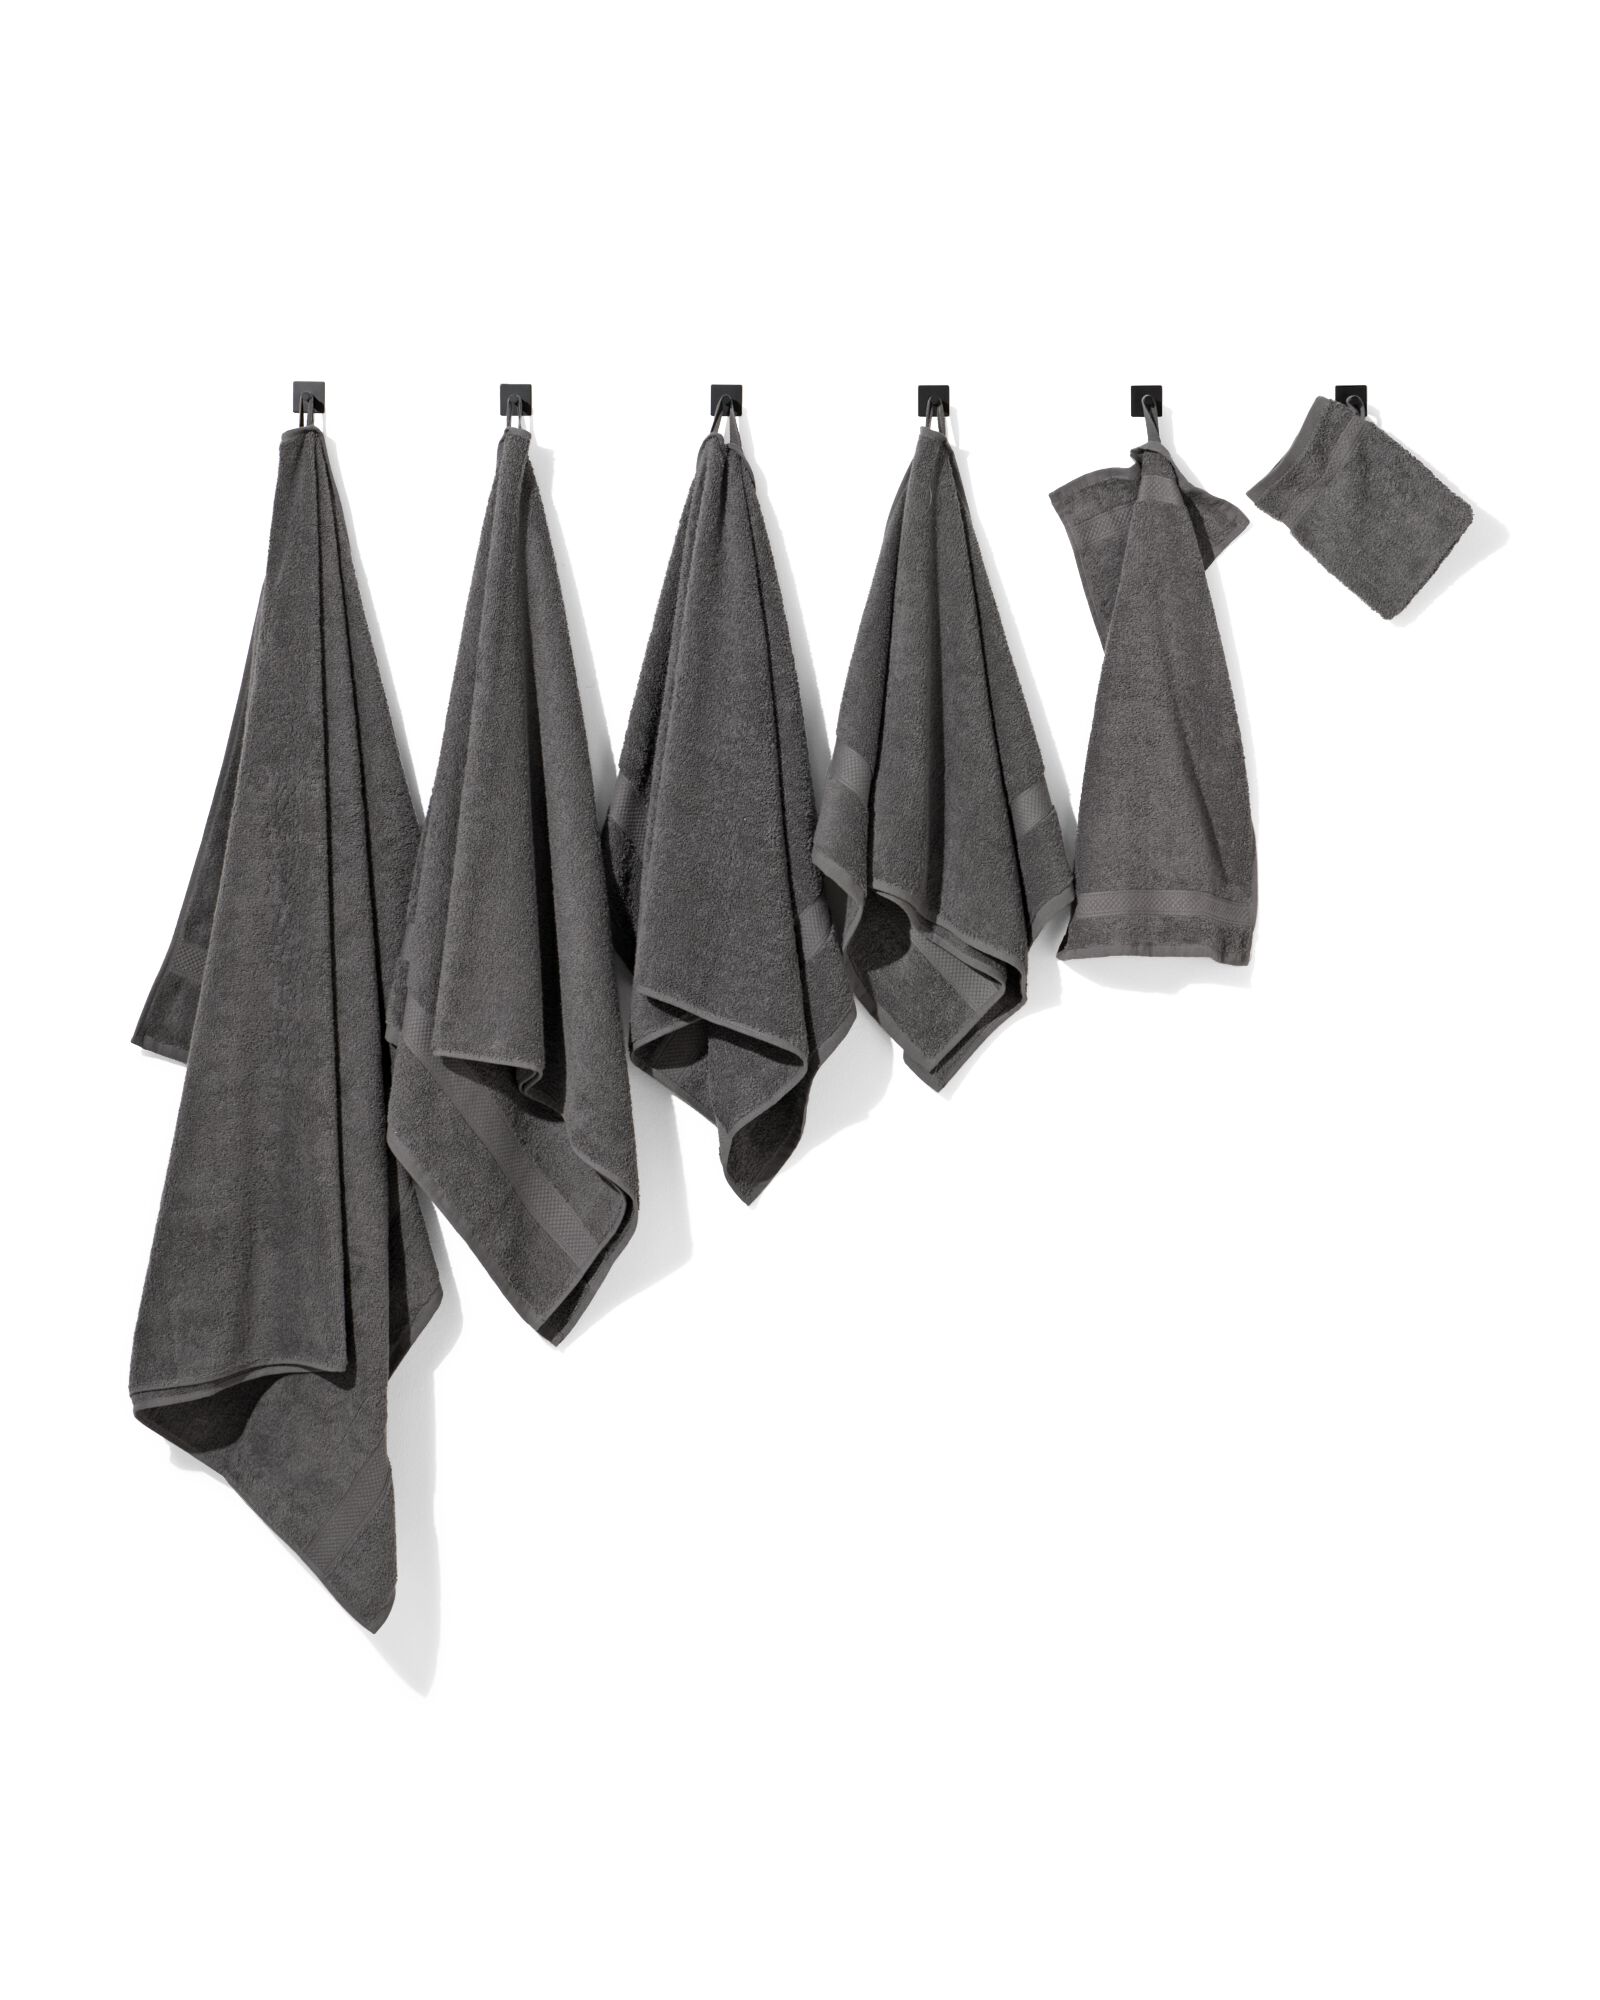 handdoek - 50 x 100 cm - zware kwaliteit - donkergrijs donkergrijs handdoek 50 x 100 - 5212602 - HEMA